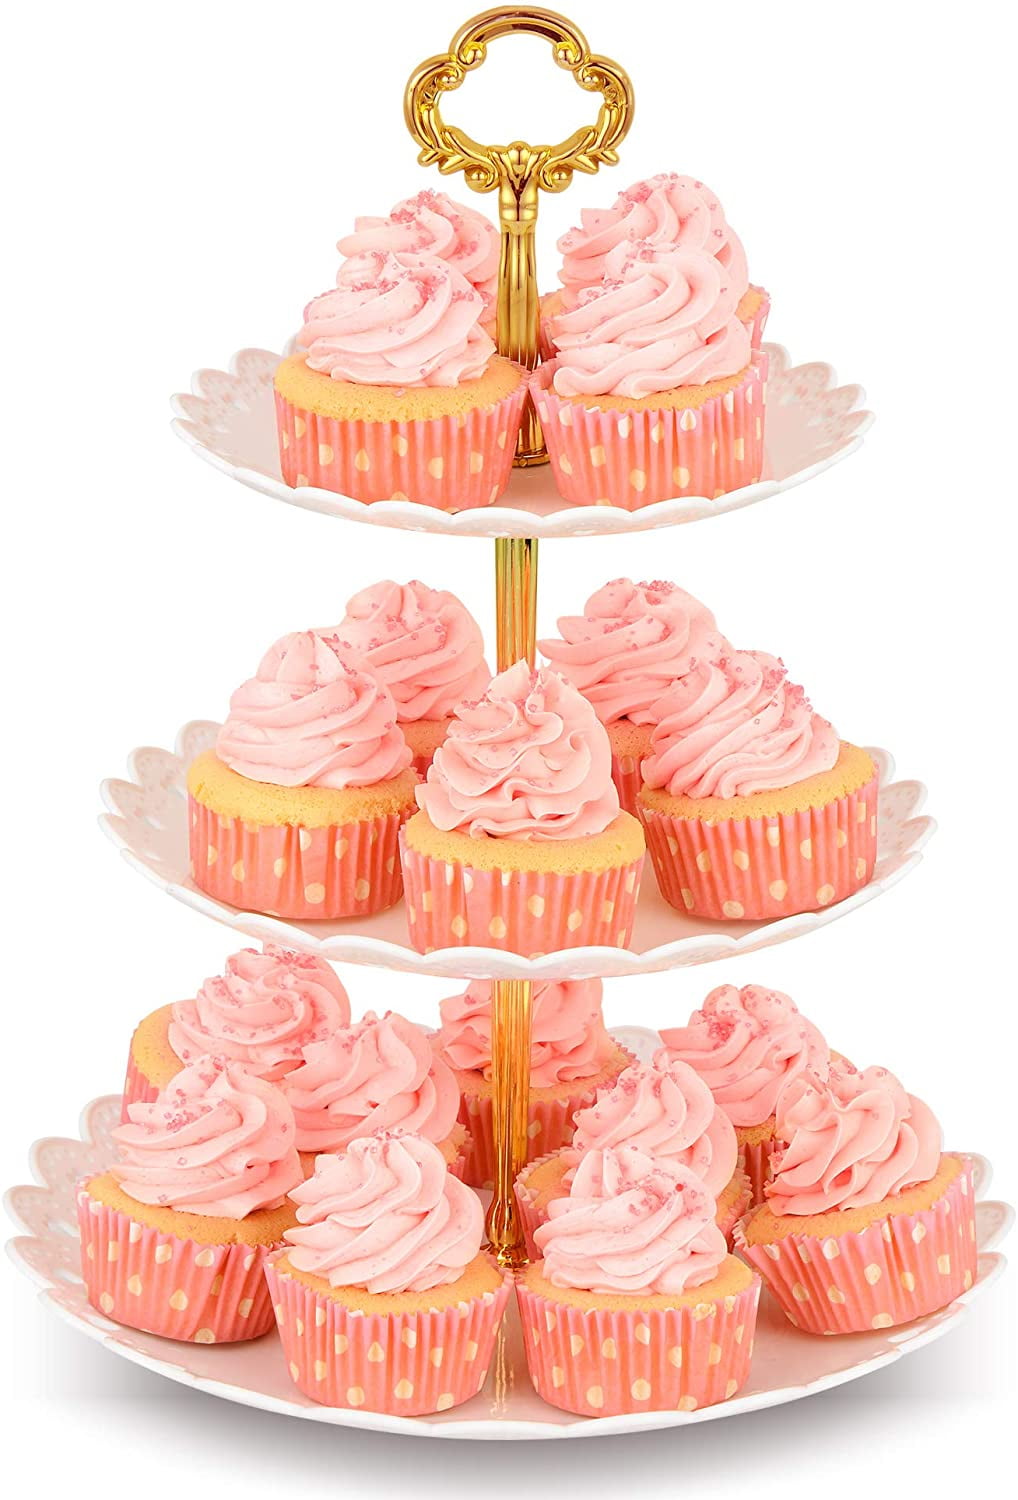 Bianco YIGO 1pc 3 Tier Cupcake Stand di Plastica a più Livelli di Servizio Stand Dolci Frutta Snack Torre Vassoio da Casa di Cerimonia Nuziale di Compleanno Tea Party Baby Shower 